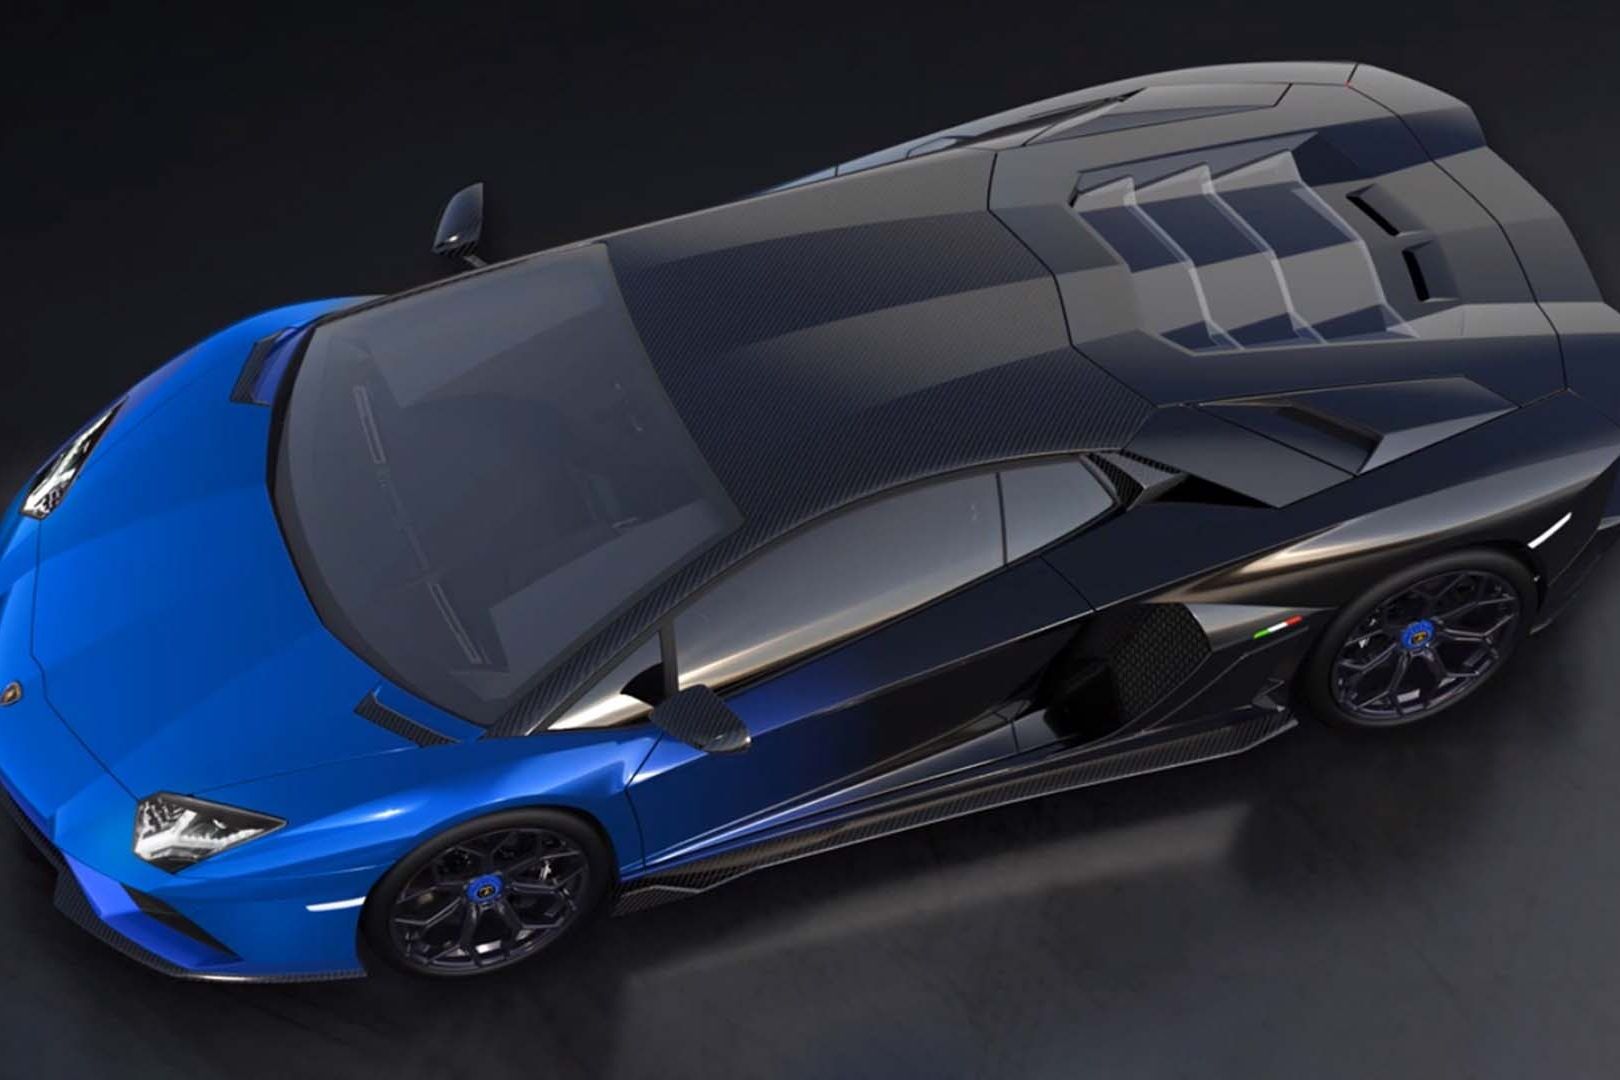 Exklusiv Lamborghini Aventador LP 780-4 Ultimae Coupé som ska paras ihop med en NFT 1.1 och upp på auktion